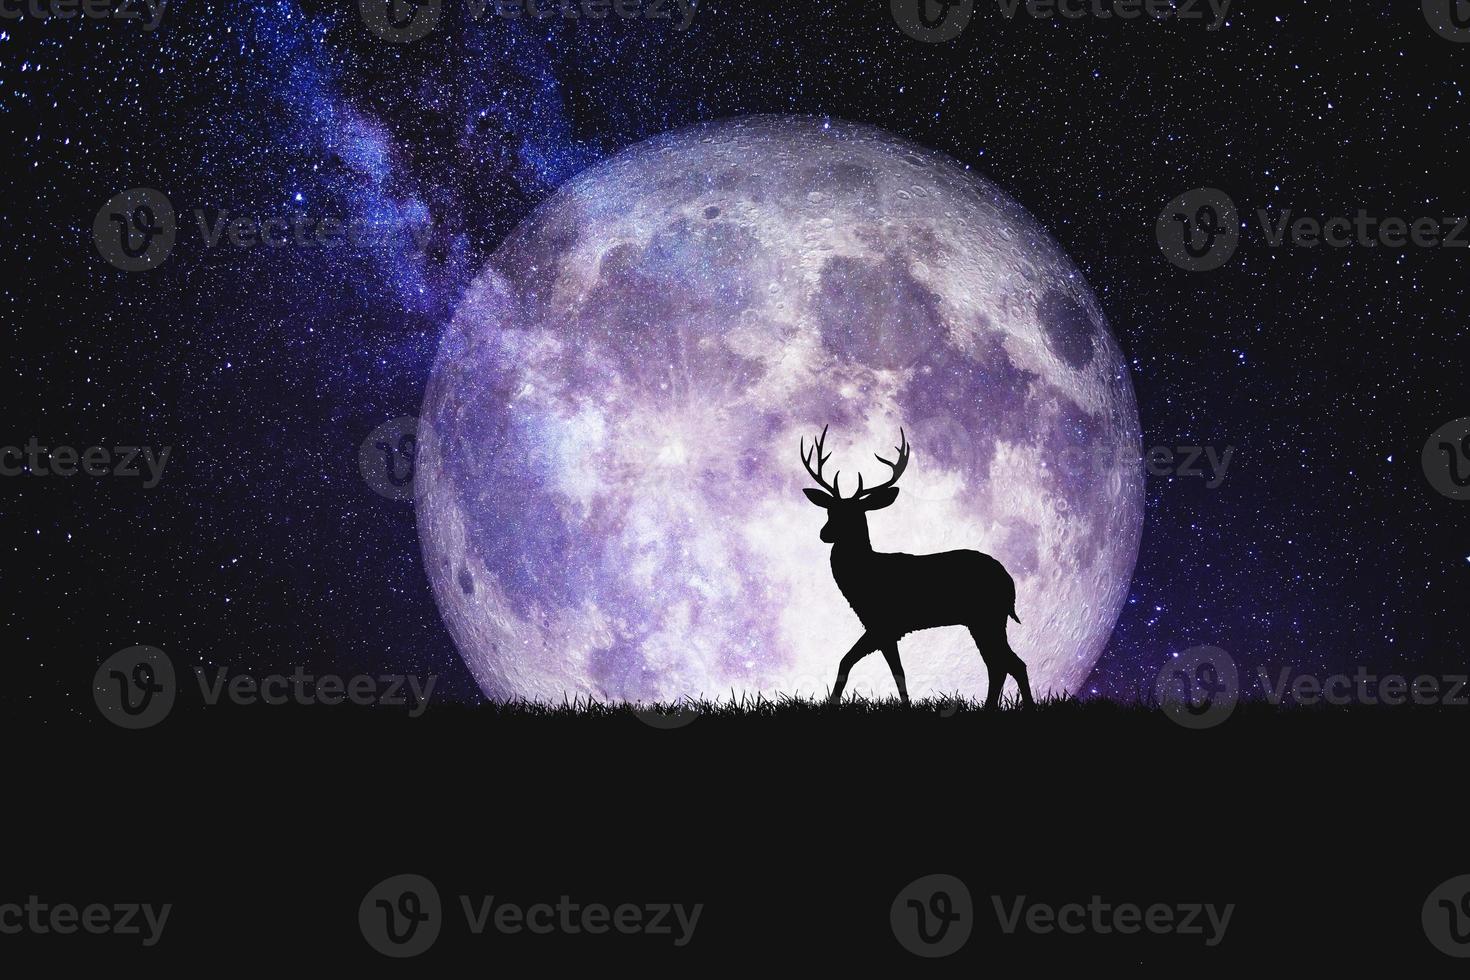 Nachthirsch-Silhouette vor dem Hintergrund eines großen Mondelements des Bildes wird von der Nasa geschmückt foto